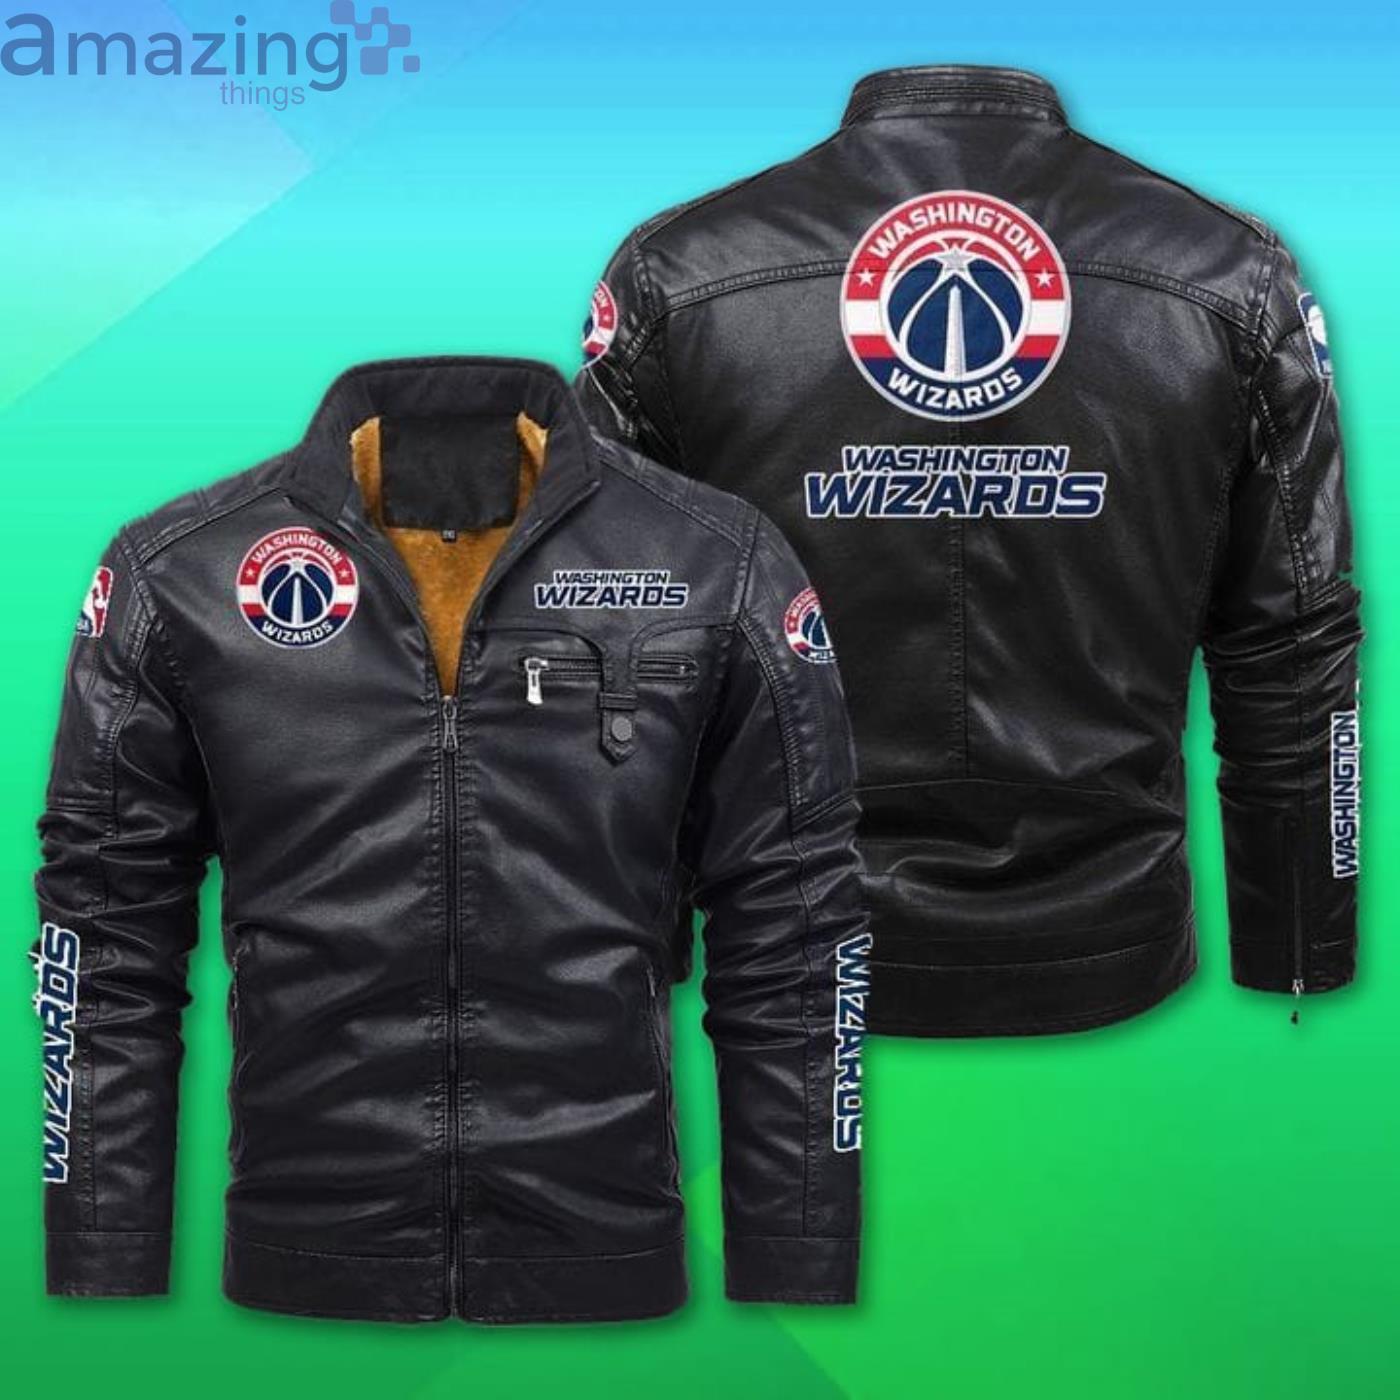 Washington Wizards Leather Jacket